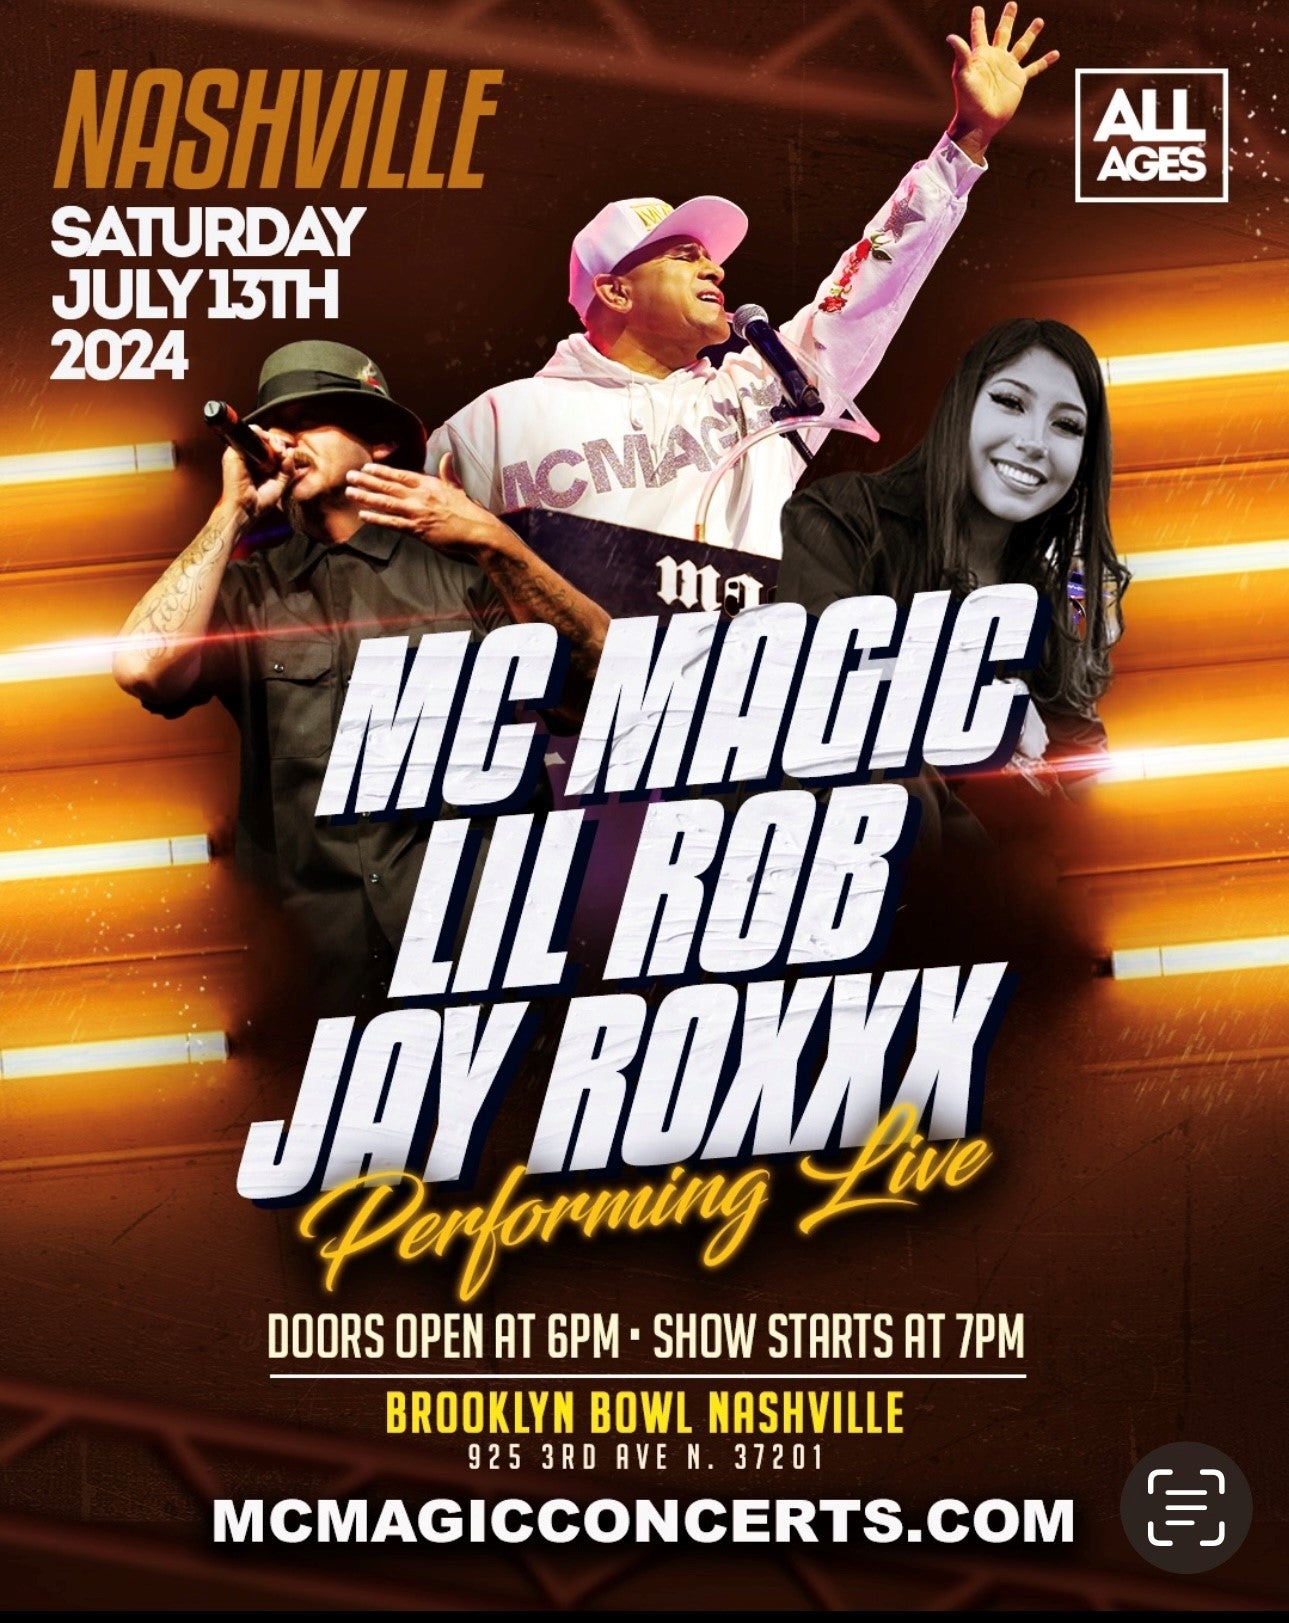 MC Magic, Lil' Rob, & Jay Roxxx